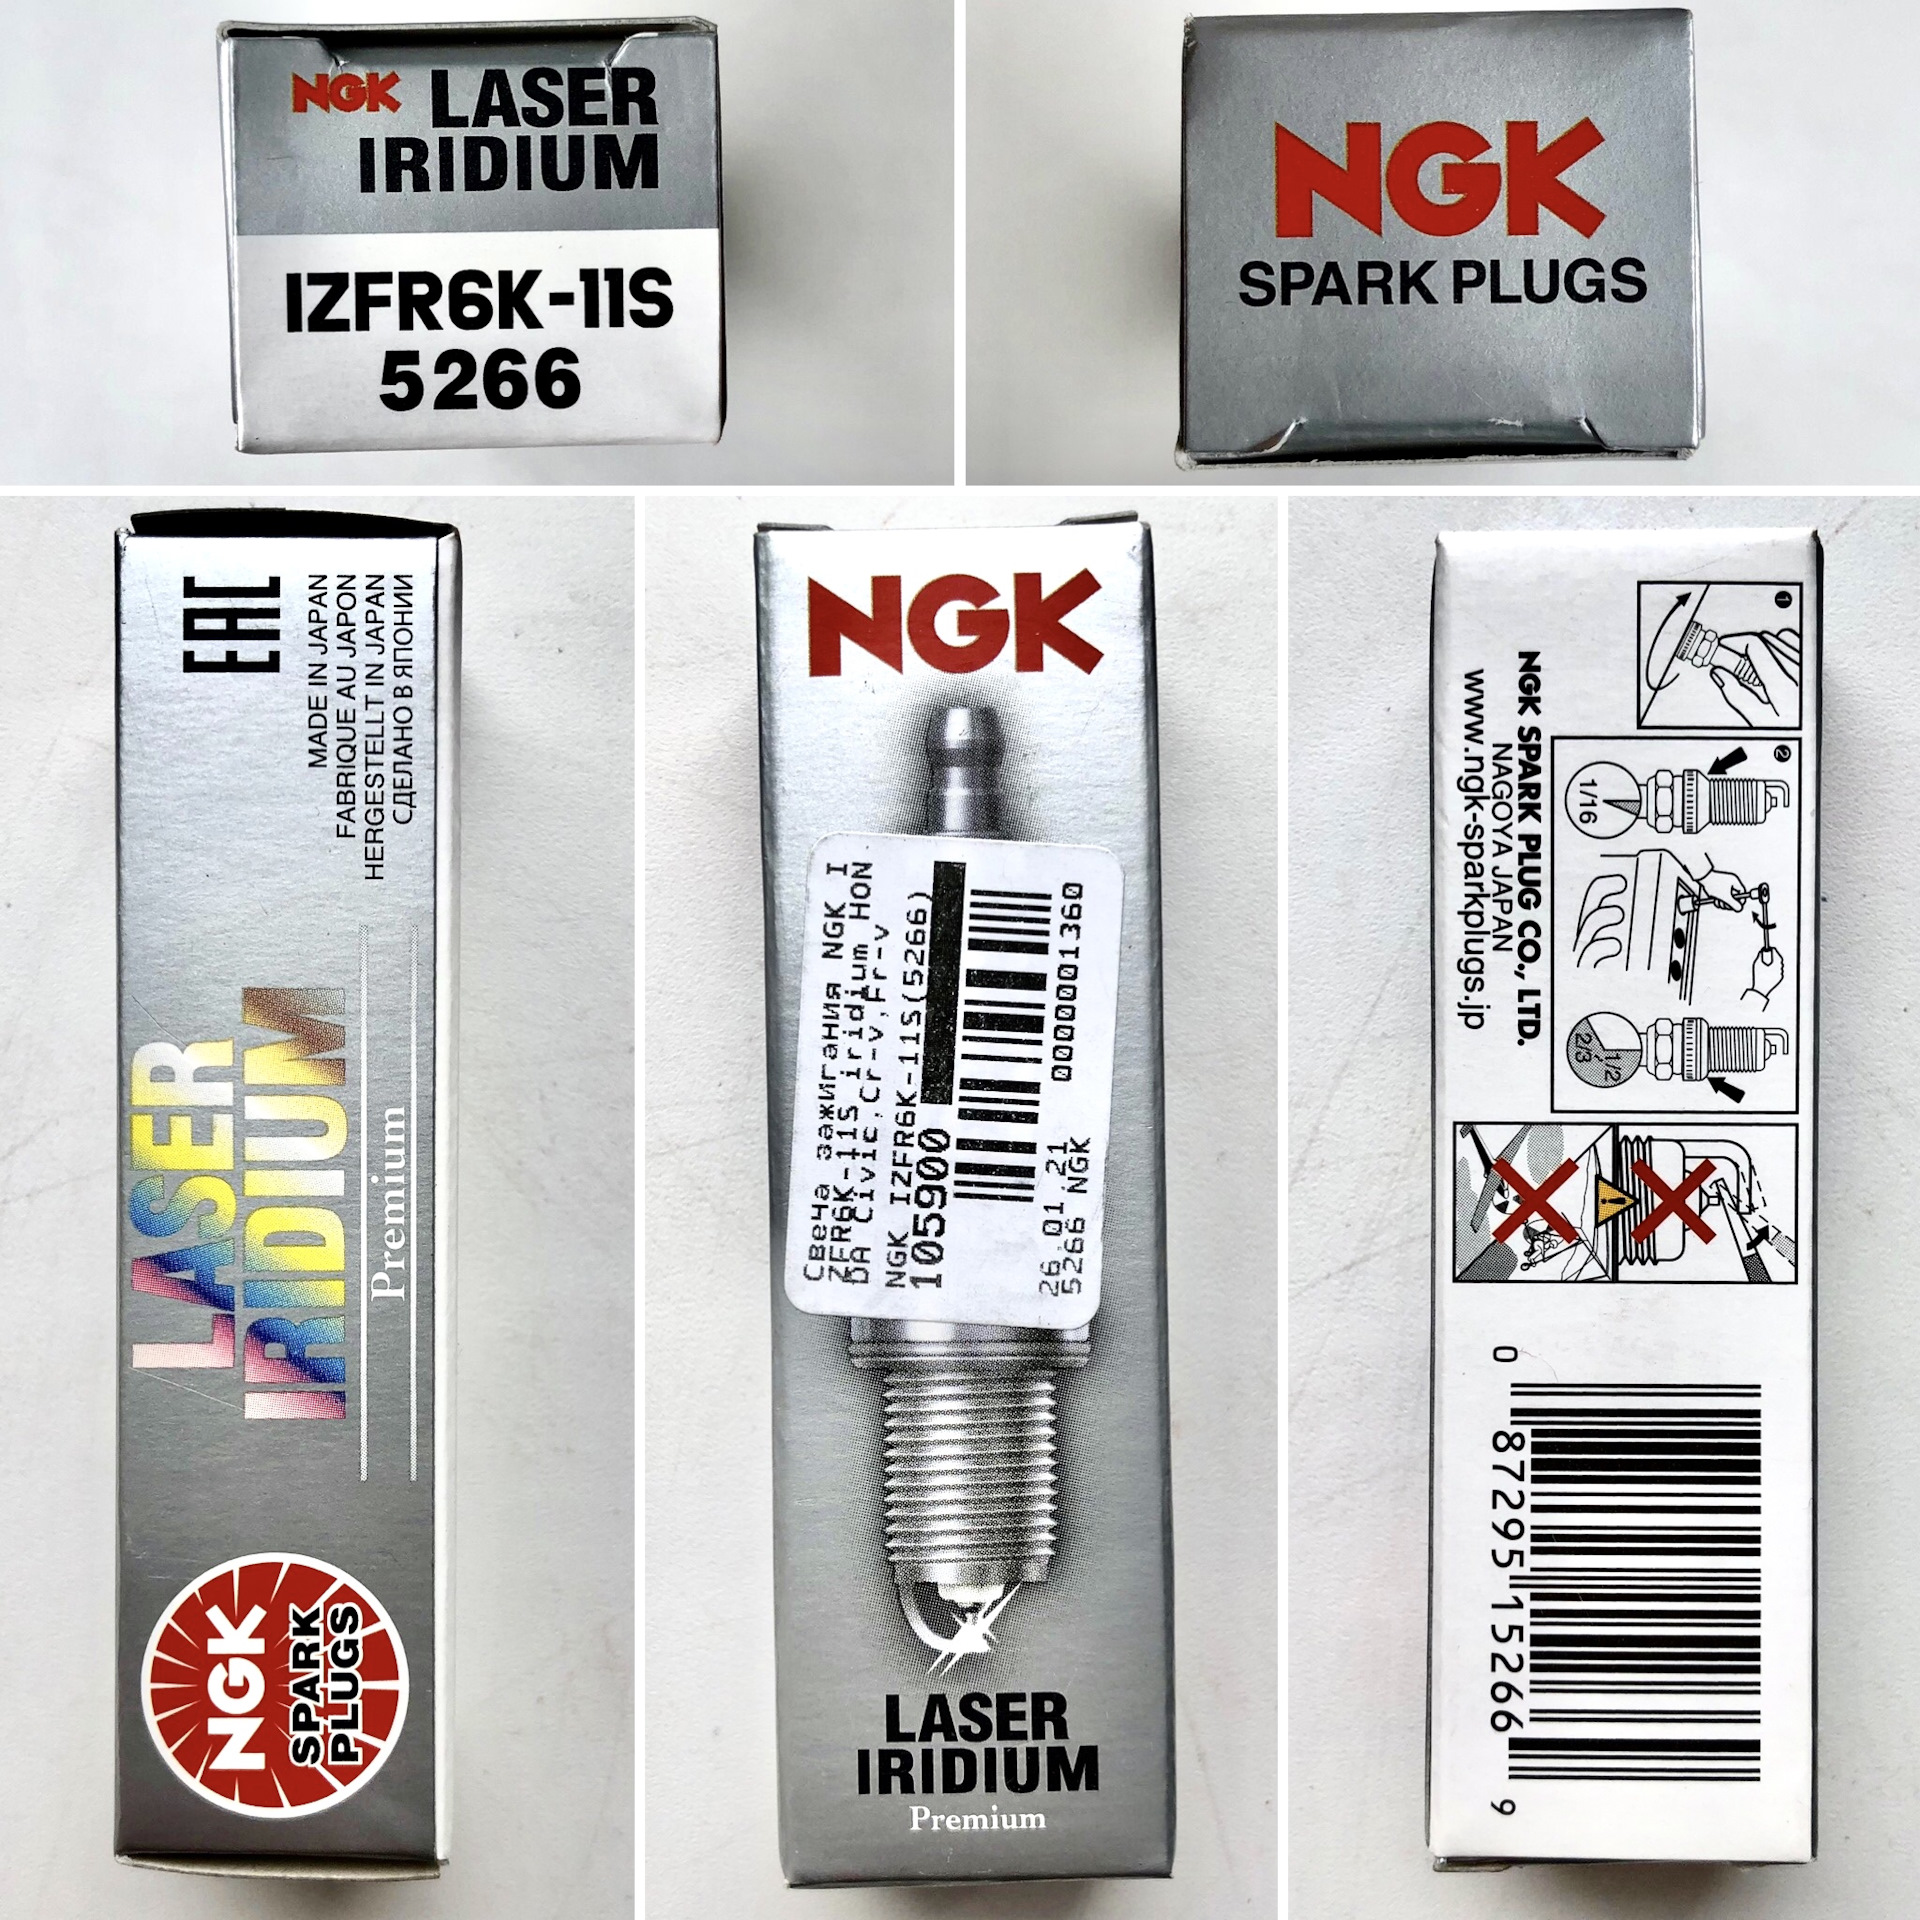 Ngk как отличить. NGK izfr6k-11 размер ключа. Izfr6k-11s от NGK В упаковке NGK. Свечи зажигания Хонда Аккорд 8 2.4. Оригинальная упаковка свечи NGK izfr6k11s.